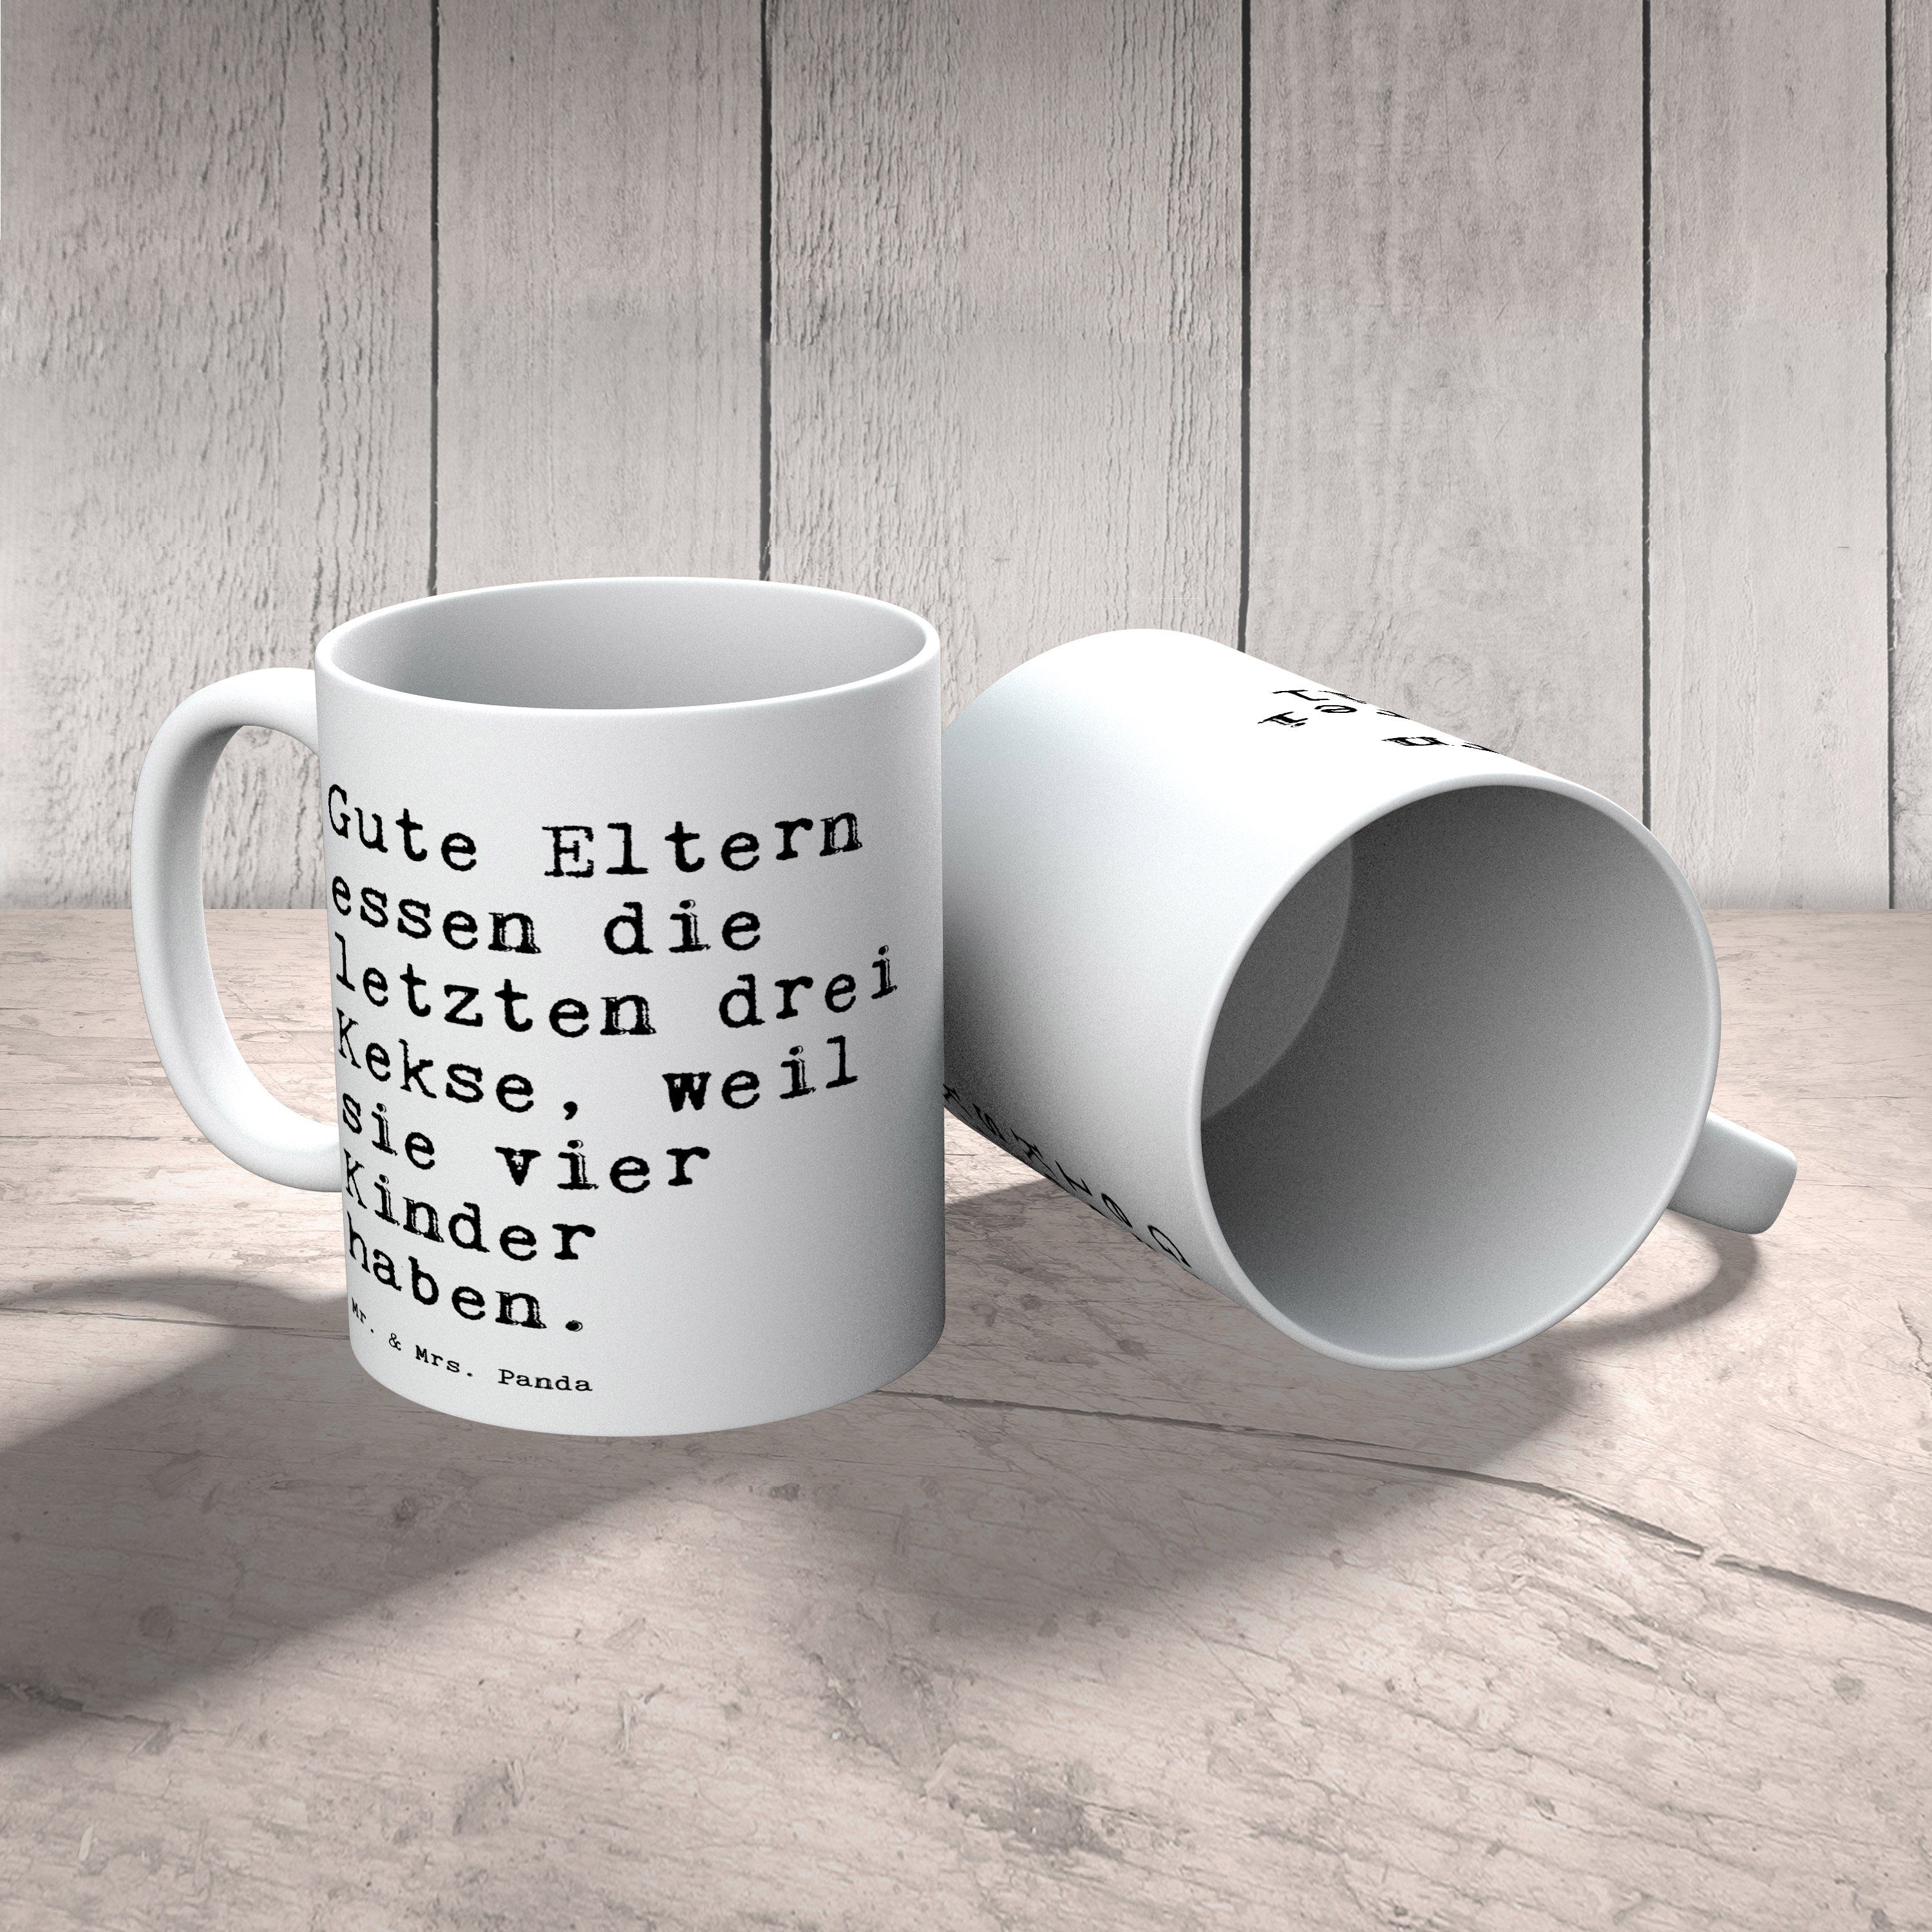 Mr. & Mrs. Panda Tasse Keramik - Kaffeetasse, - Weiß essen Gute Bech, die... Geschenk, Eltern lustig